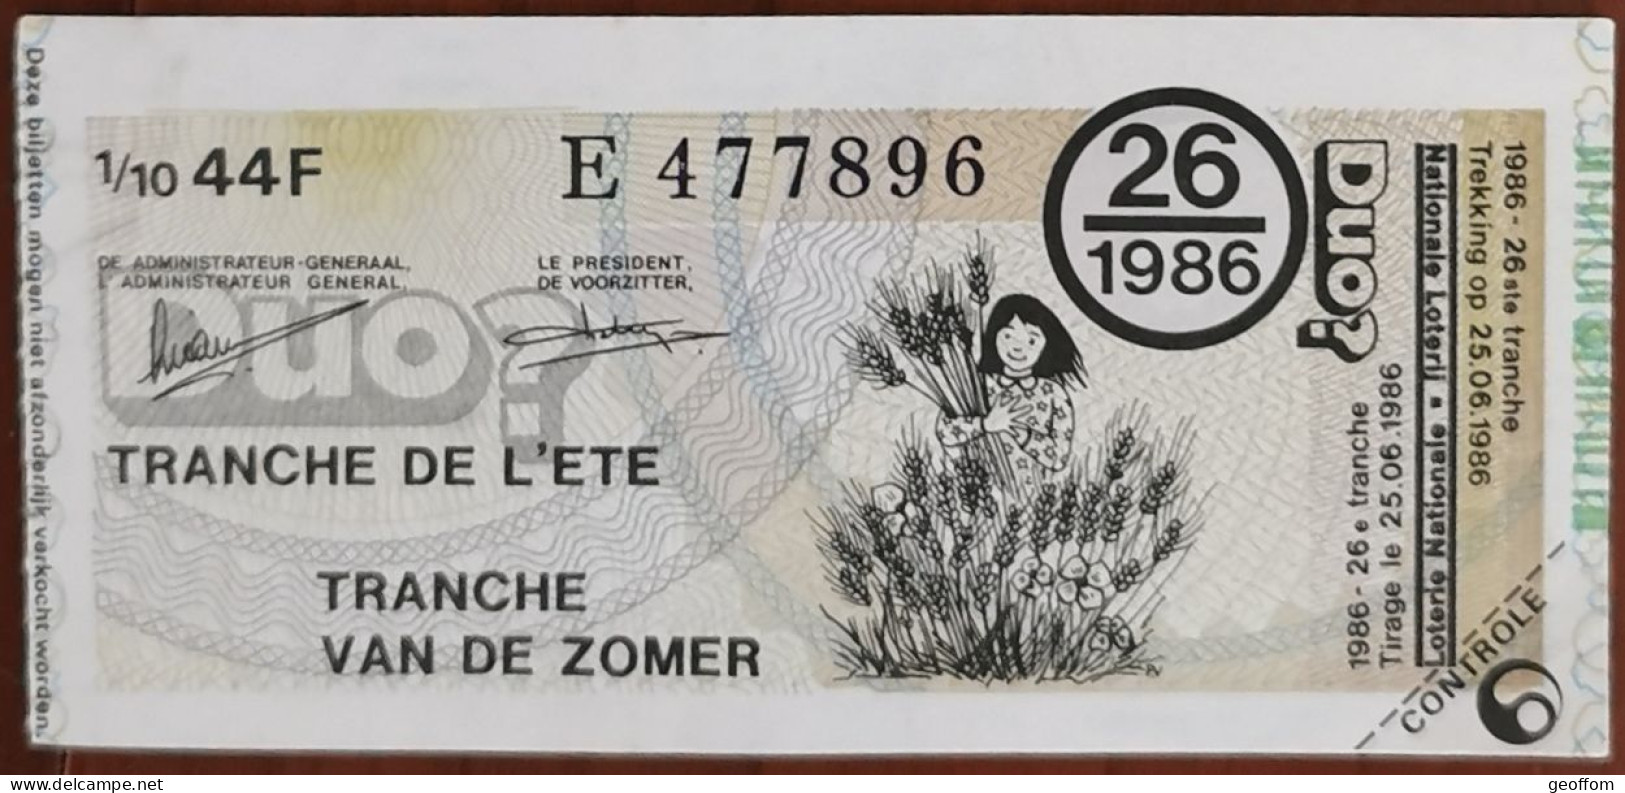 Billet De Loterie Nationale Belgique 1986 26e Tranche De L'Eté - 25-6-1986 - Billetes De Lotería